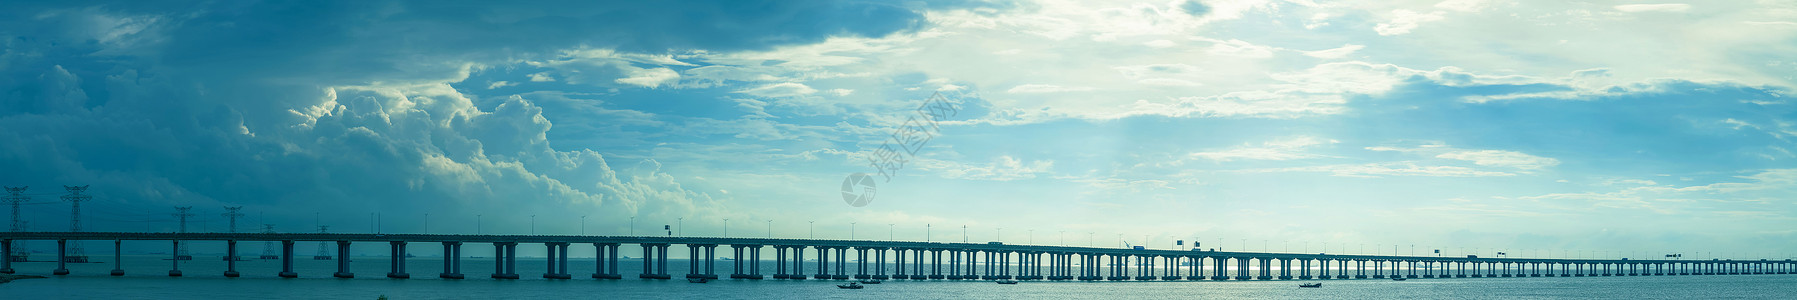 红军桥高速公路跨海大桥背景